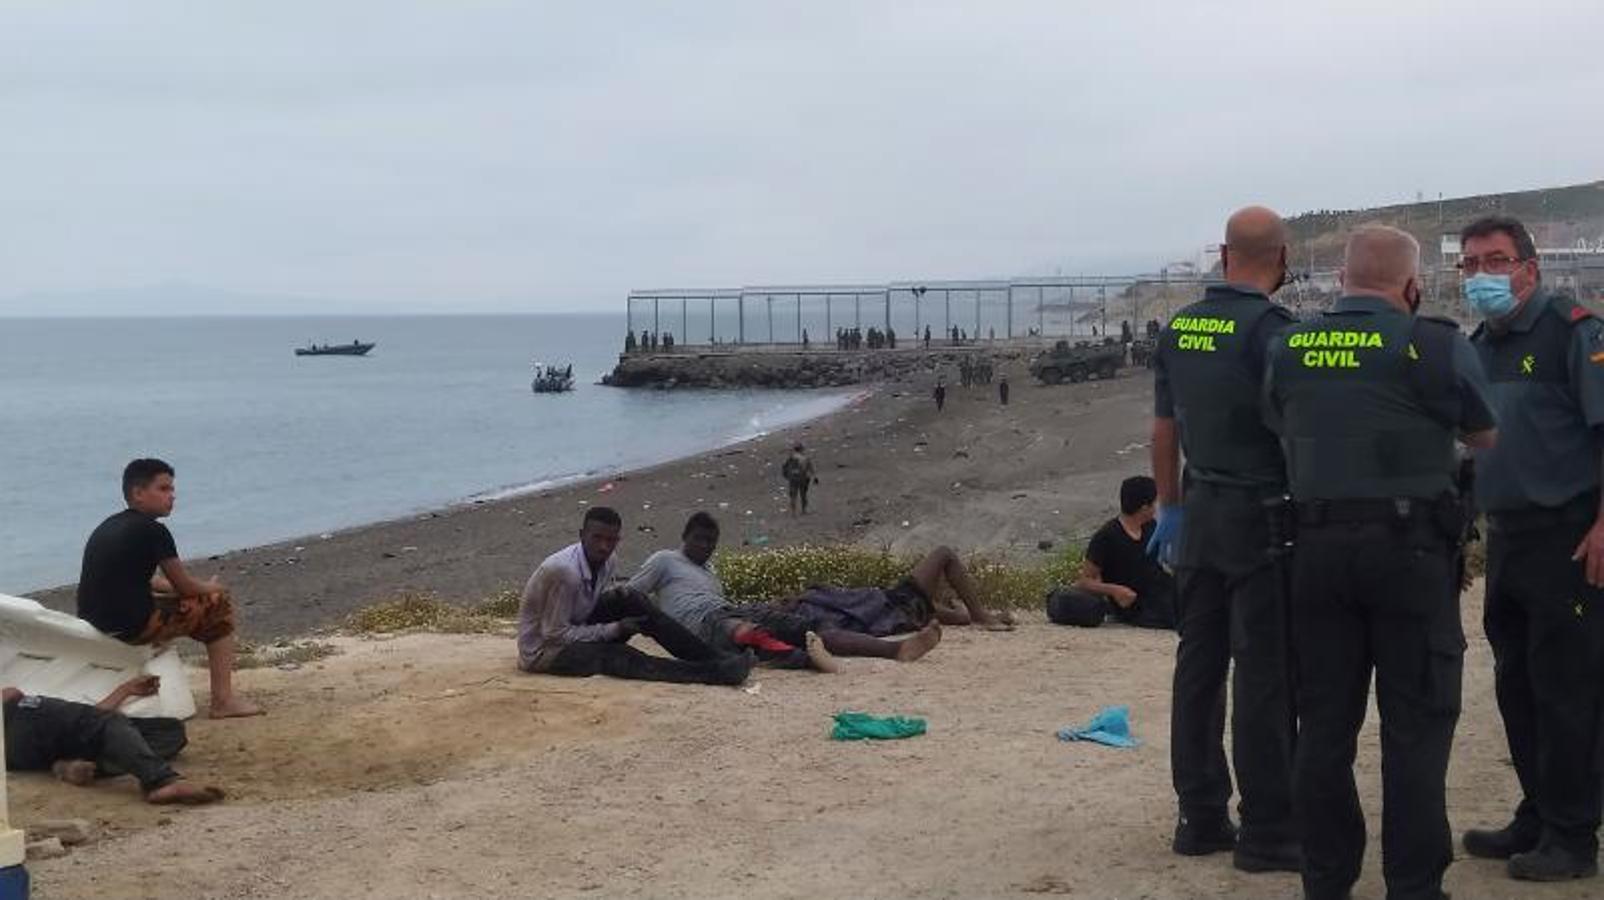 Miembros de la Guardia Civil conversan junto a un grupo de inmigrantes que han cruzado la frontera a nado por los espigones fronterizos de Ceuta. 